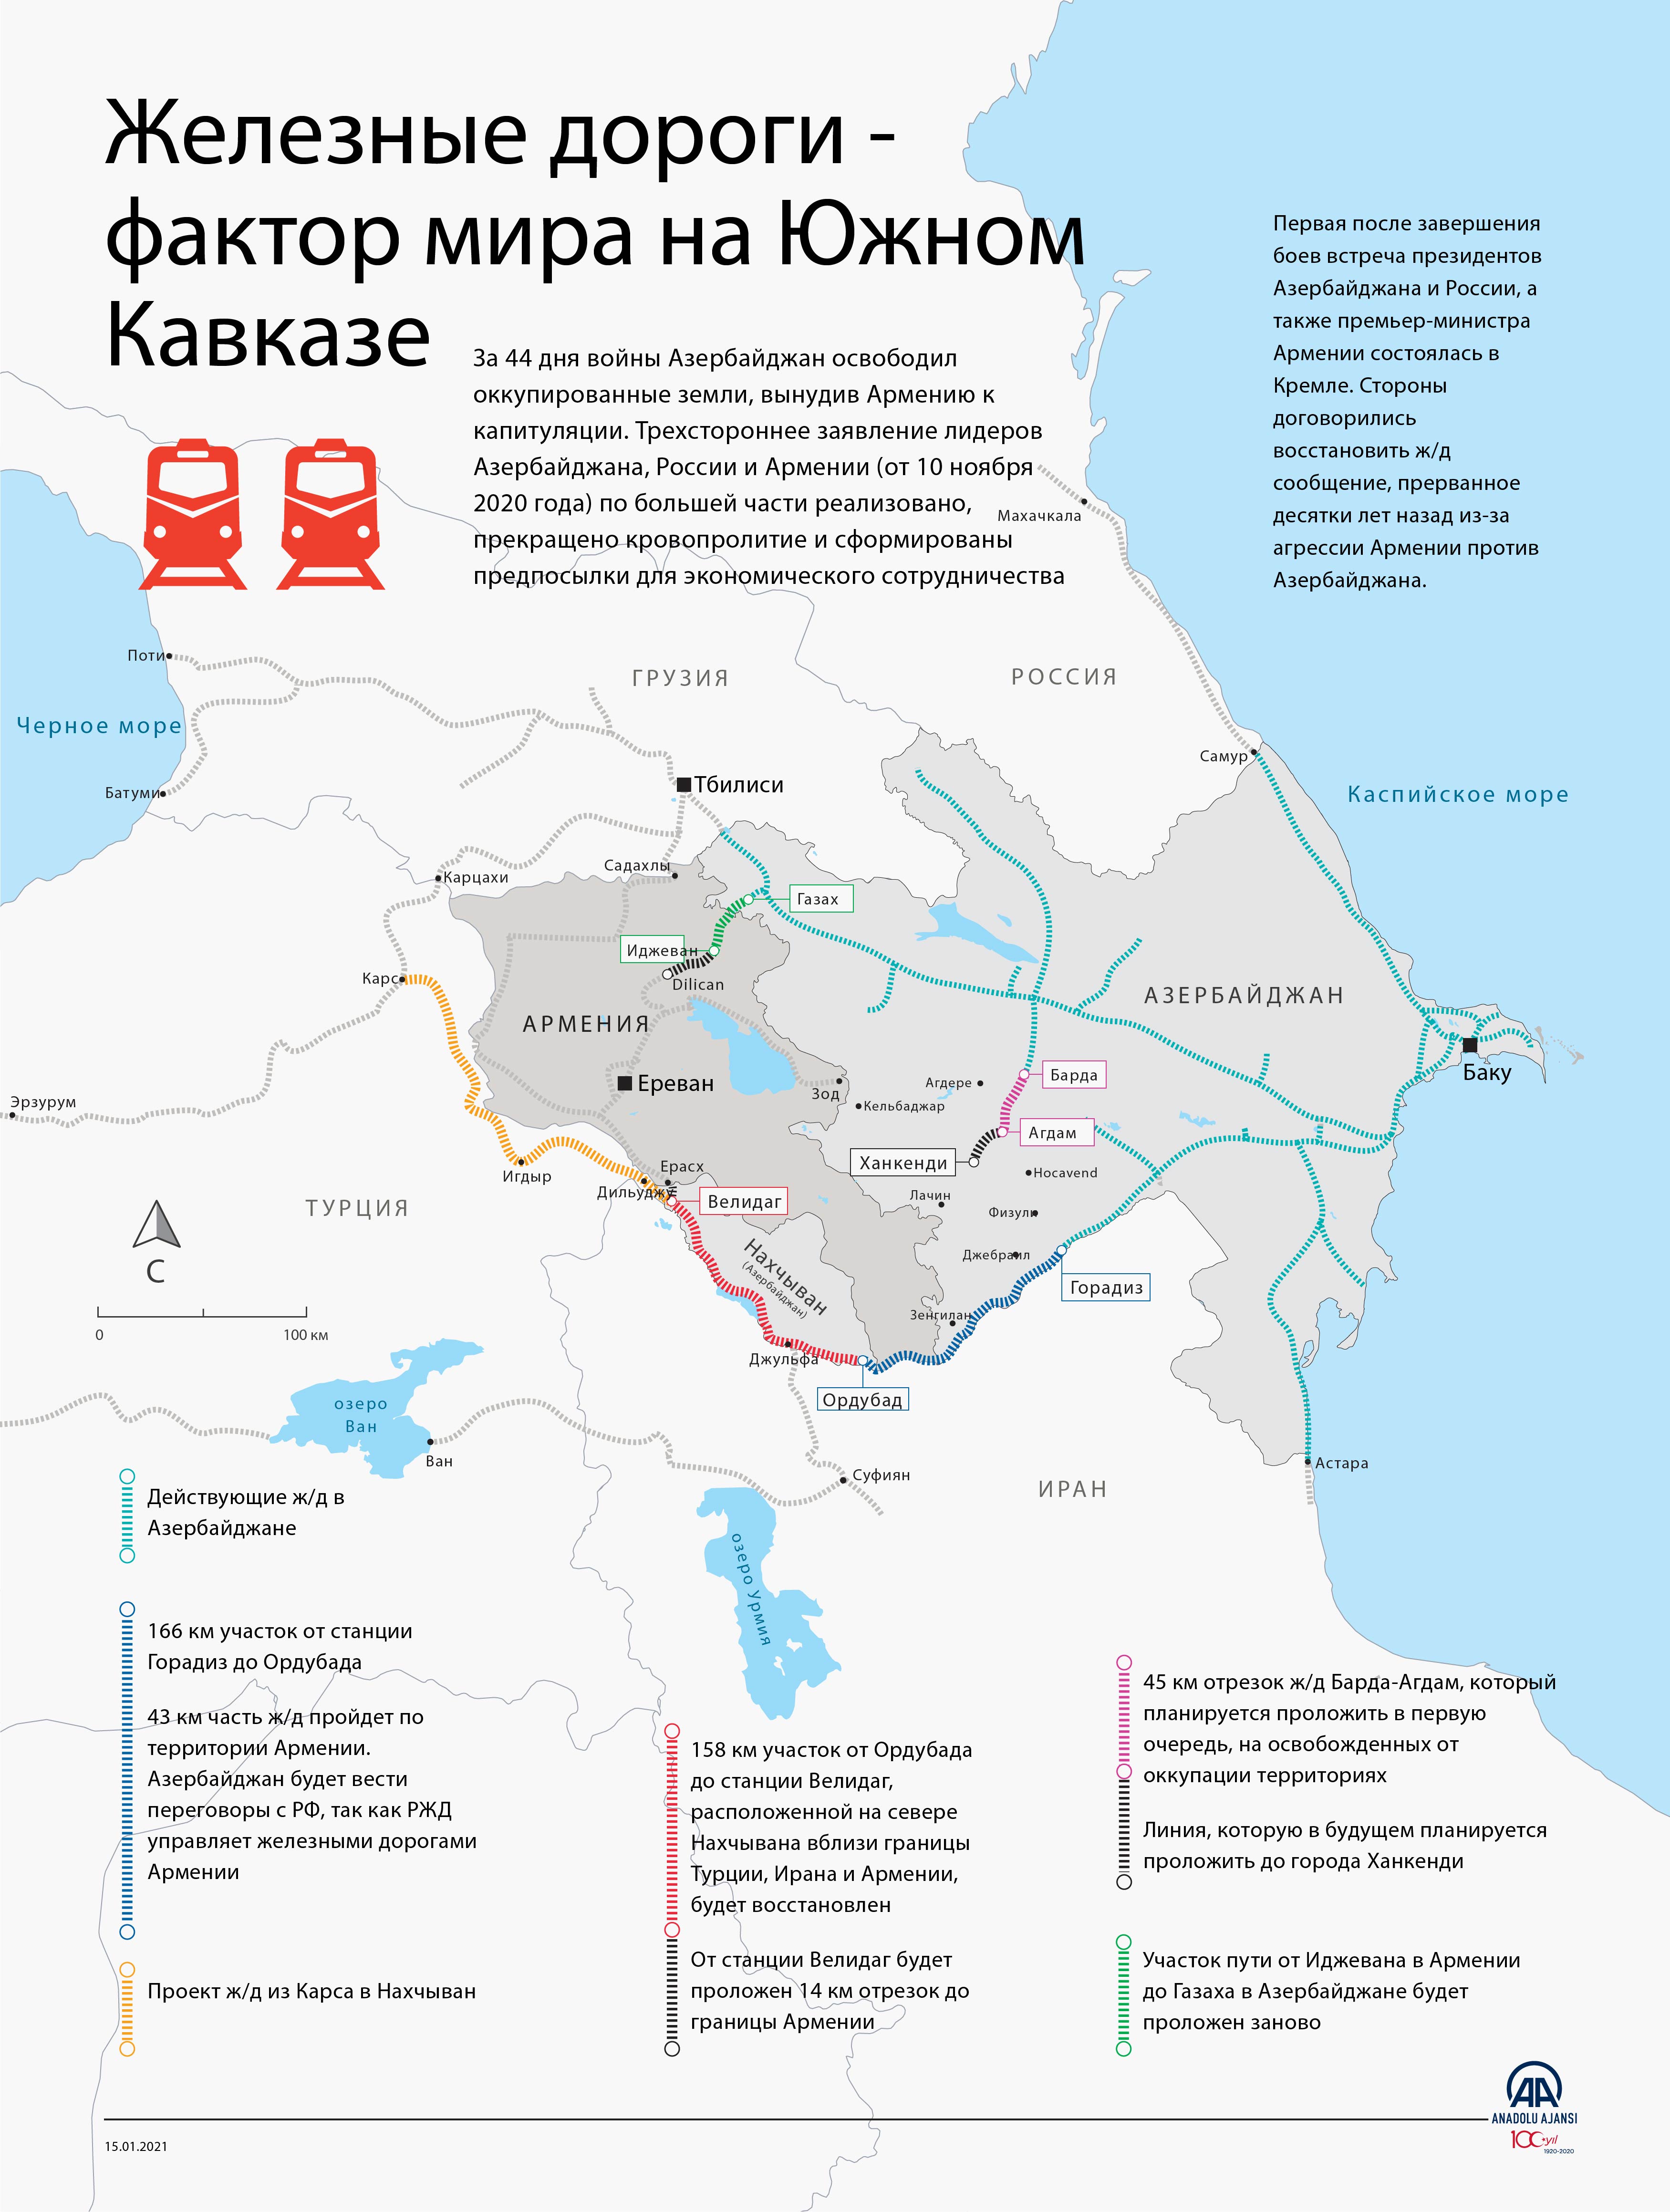 Железная дорога в Армении на карте с Азербайджаном